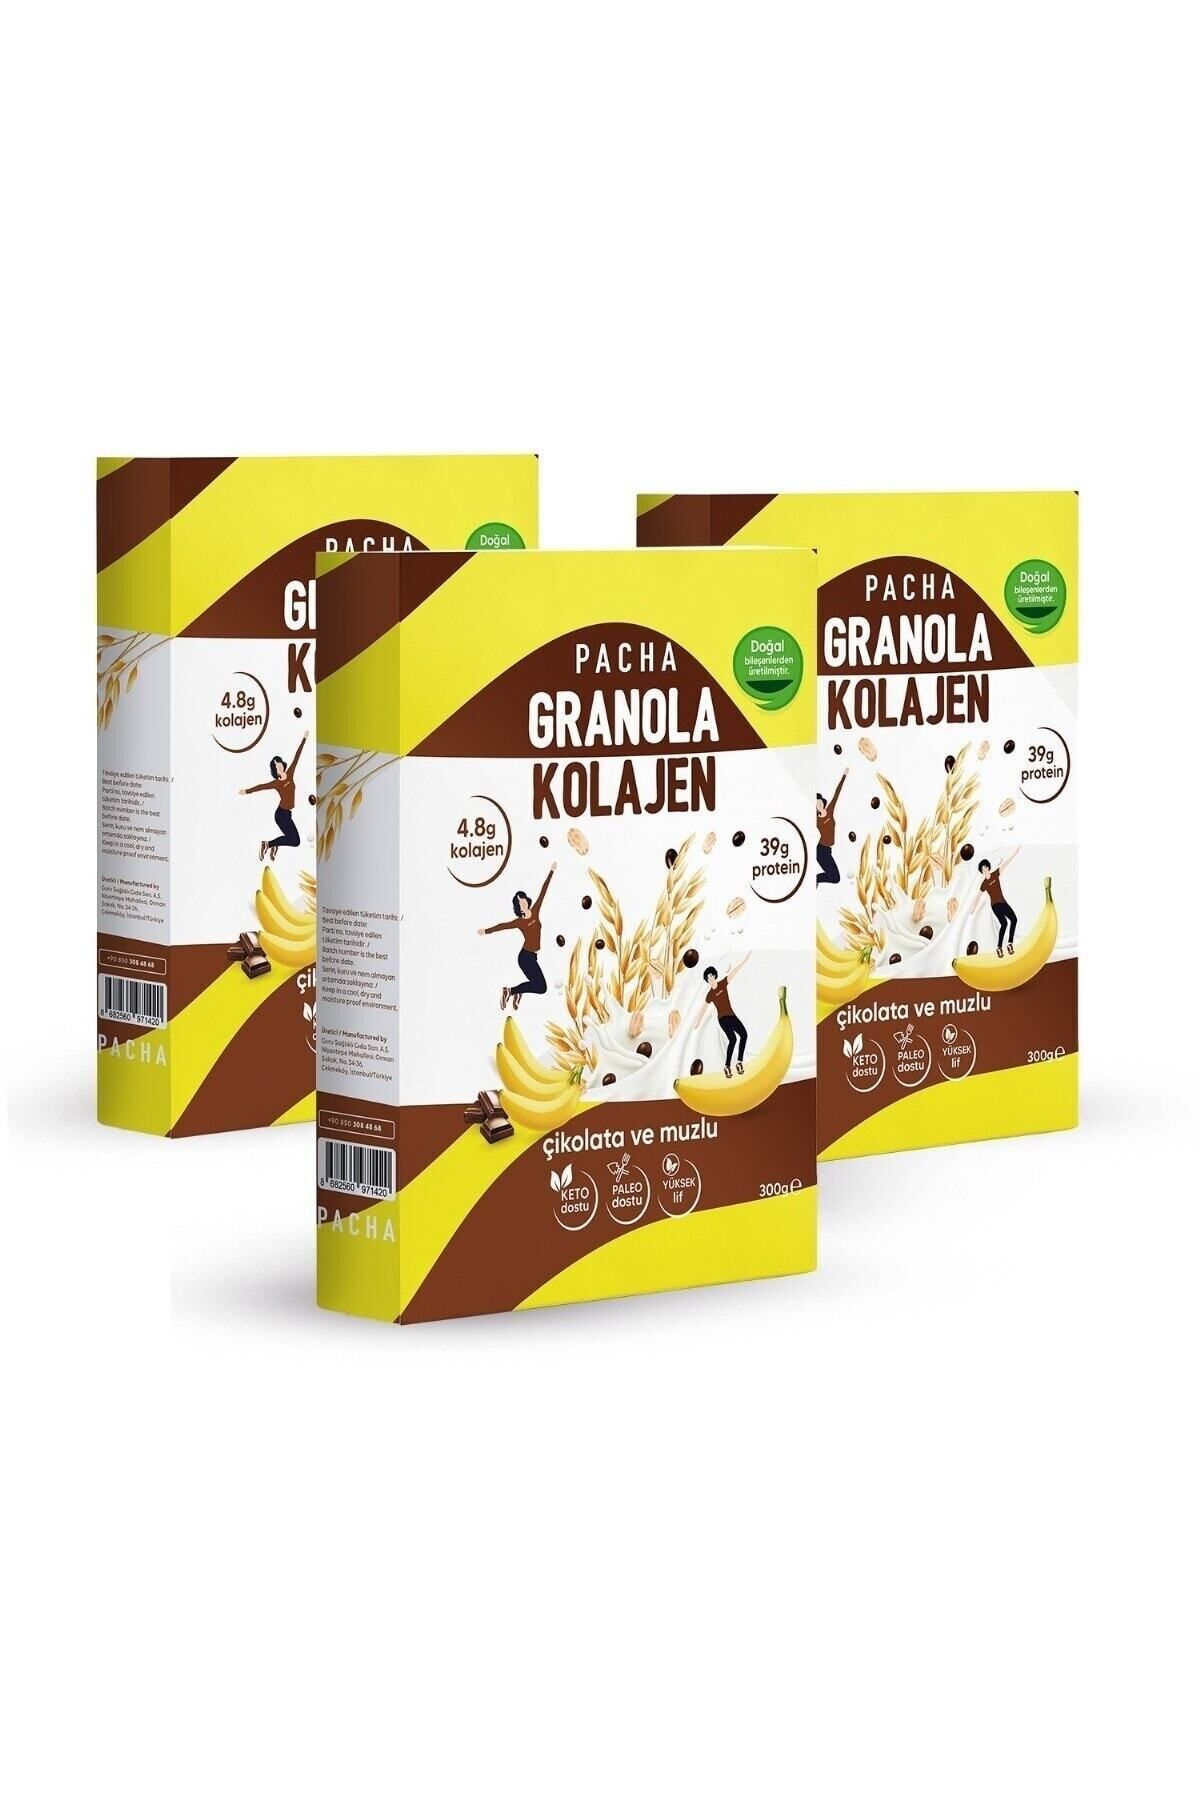 PACHA | Doğal Kolajen Ve Protein Granola | Çikolatalı Ve Muzlu | 3’lü Paket (3 X 300G)